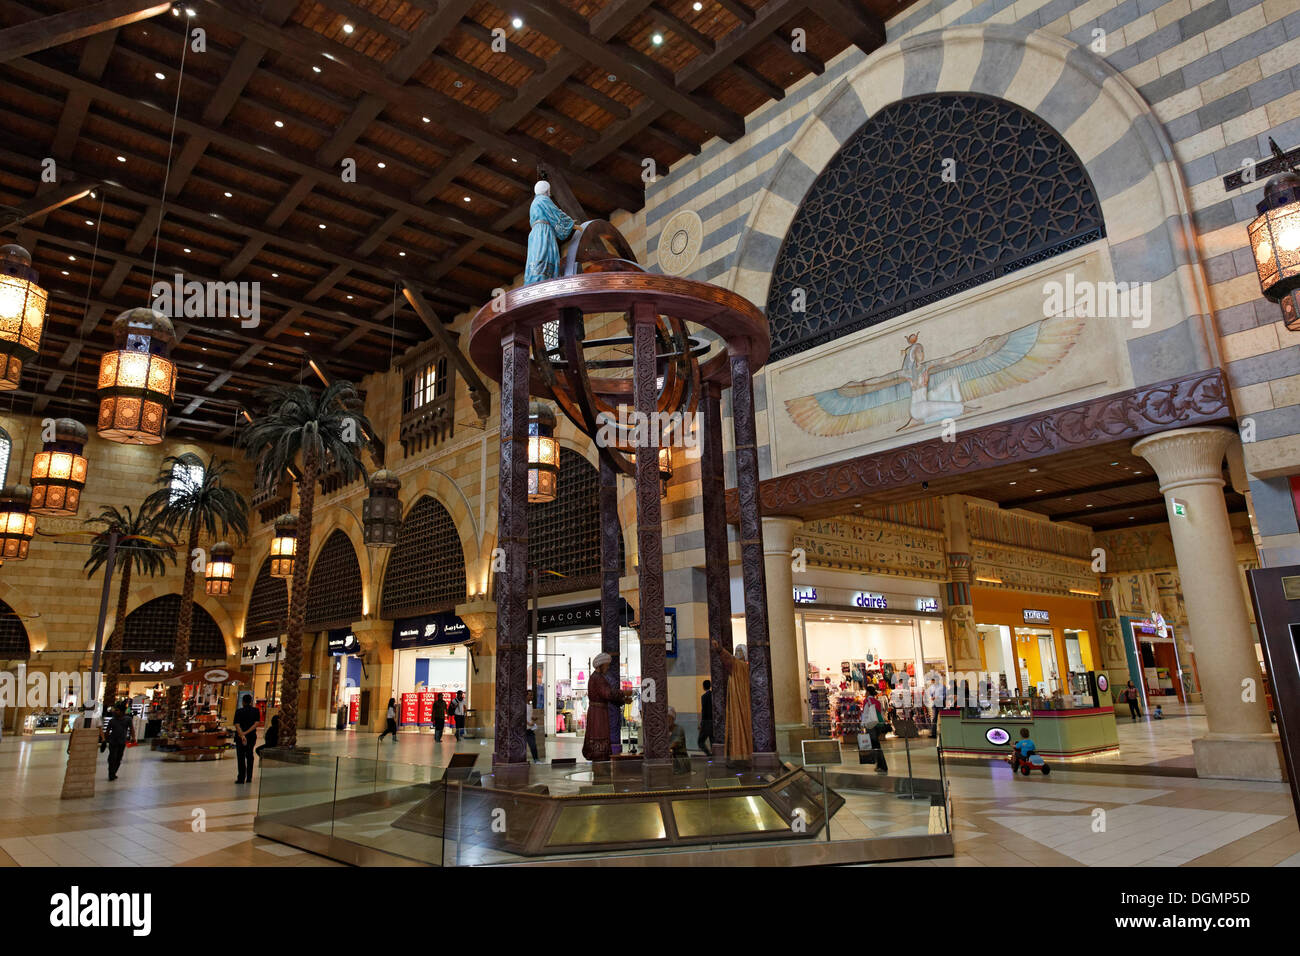 Gruppo scultoreo in Ibn Battuta Shopping Mall, Dubai, Emirati Arabi Uniti, Medio Oriente e Asia Foto Stock